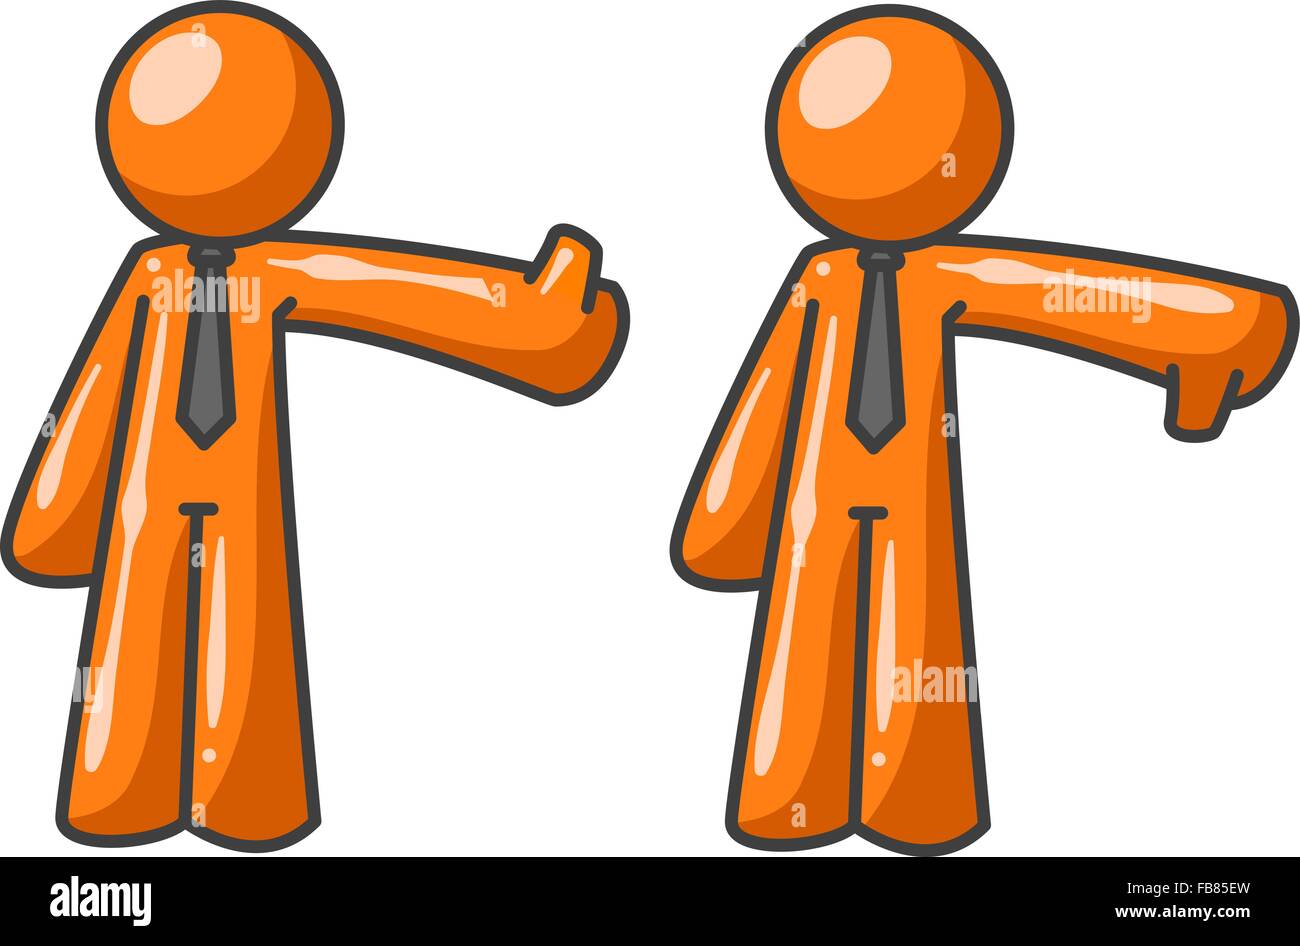 Due uomini di colore arancione critici, uno fornendo un pollice in alto, uno fornendo un pollice in giù. Illustrazione Vettoriale